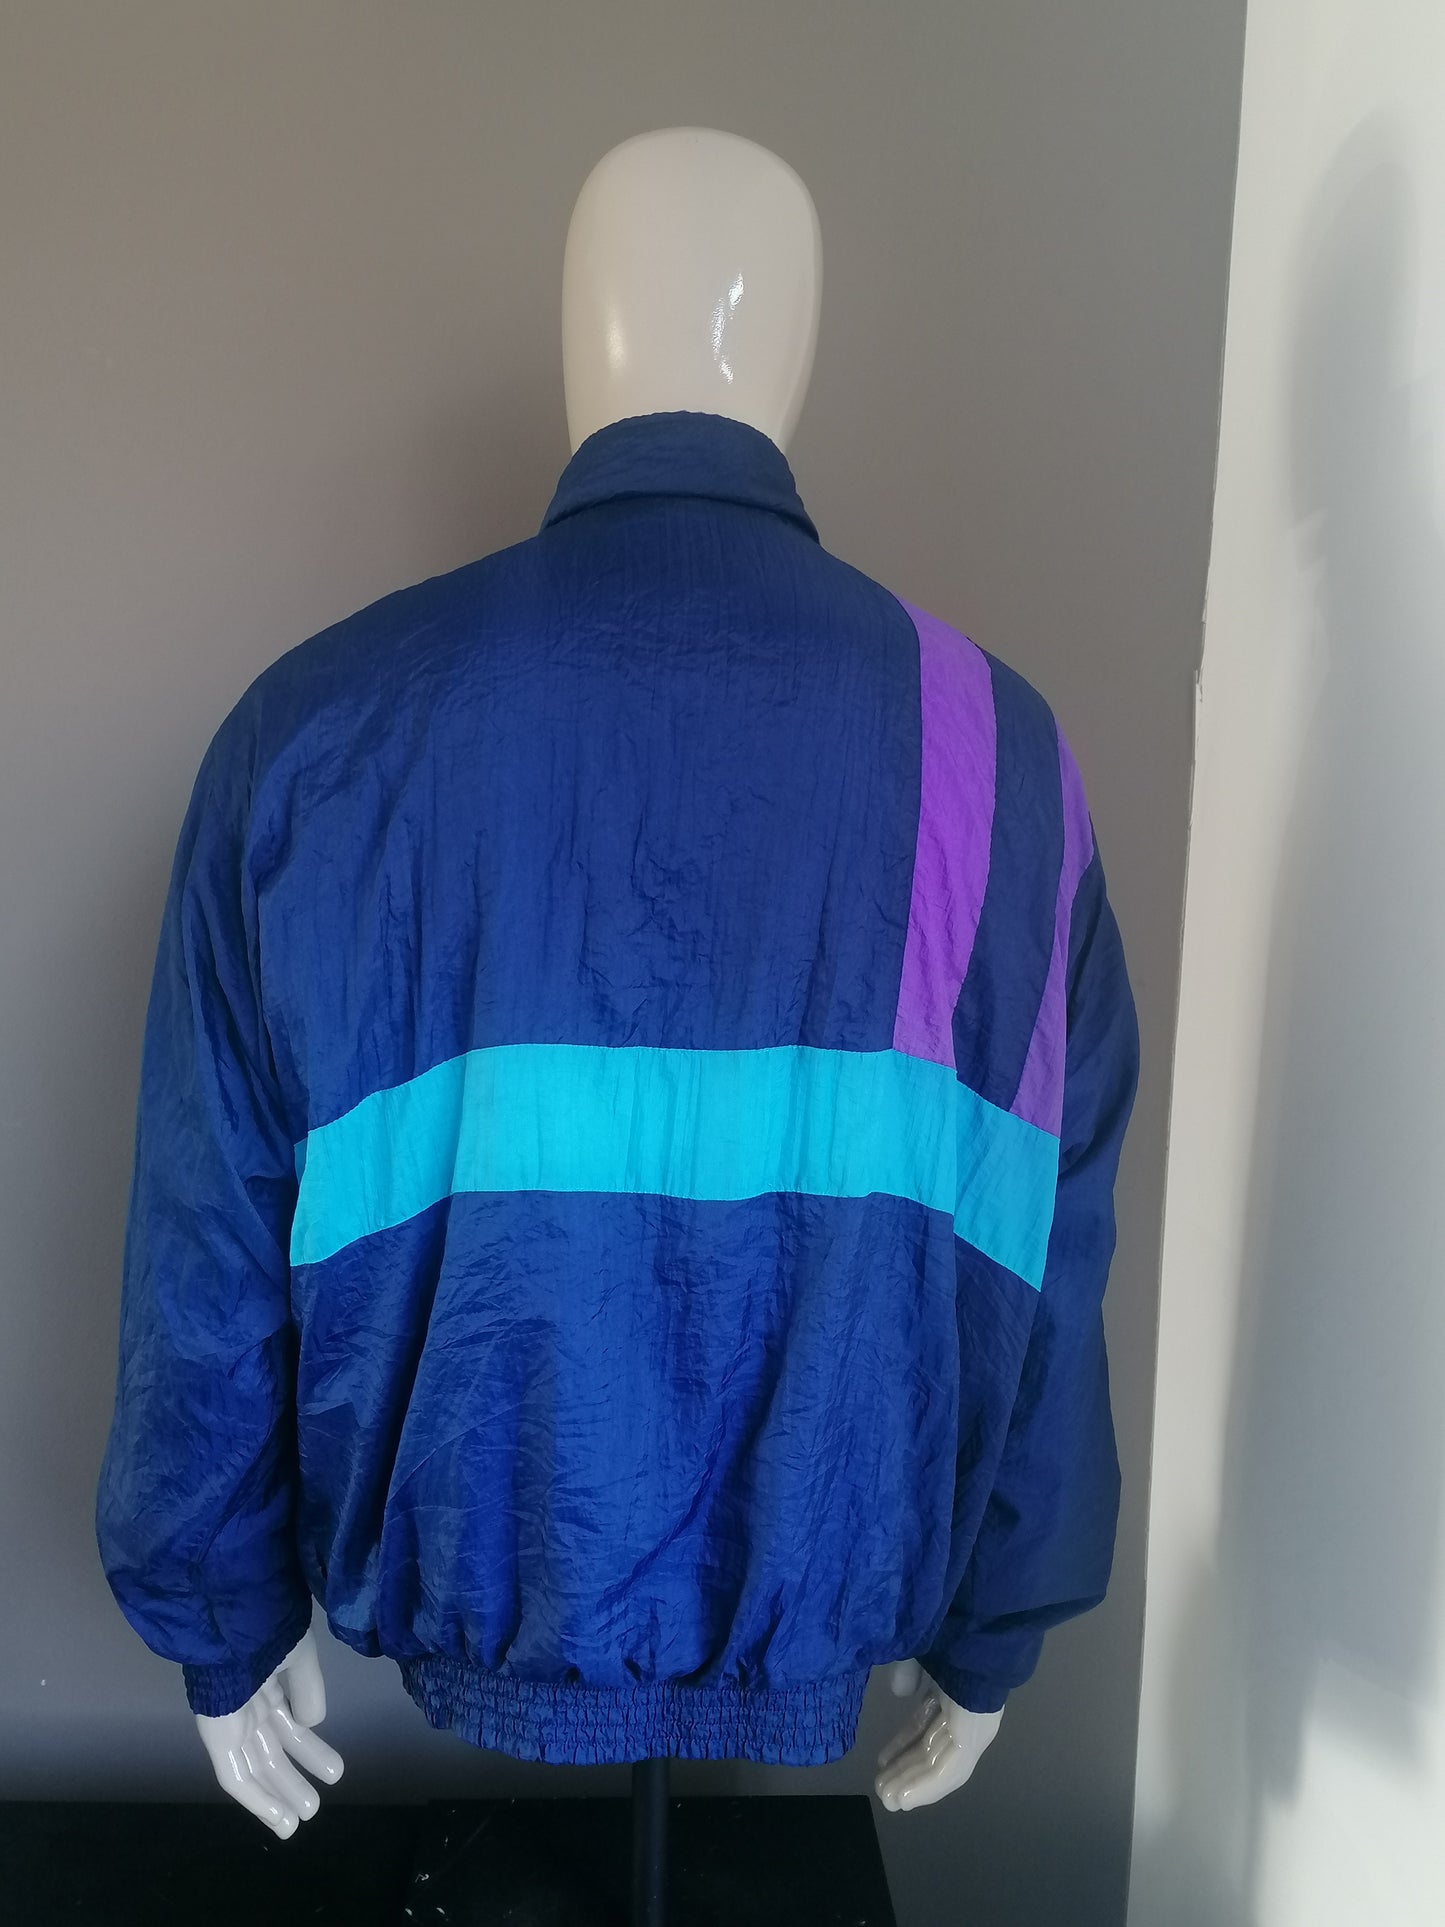 Vintage giacca a vento del concorso retrò. Leggermente foderato. Blu viola colorato. Taglia XXL / 2XL